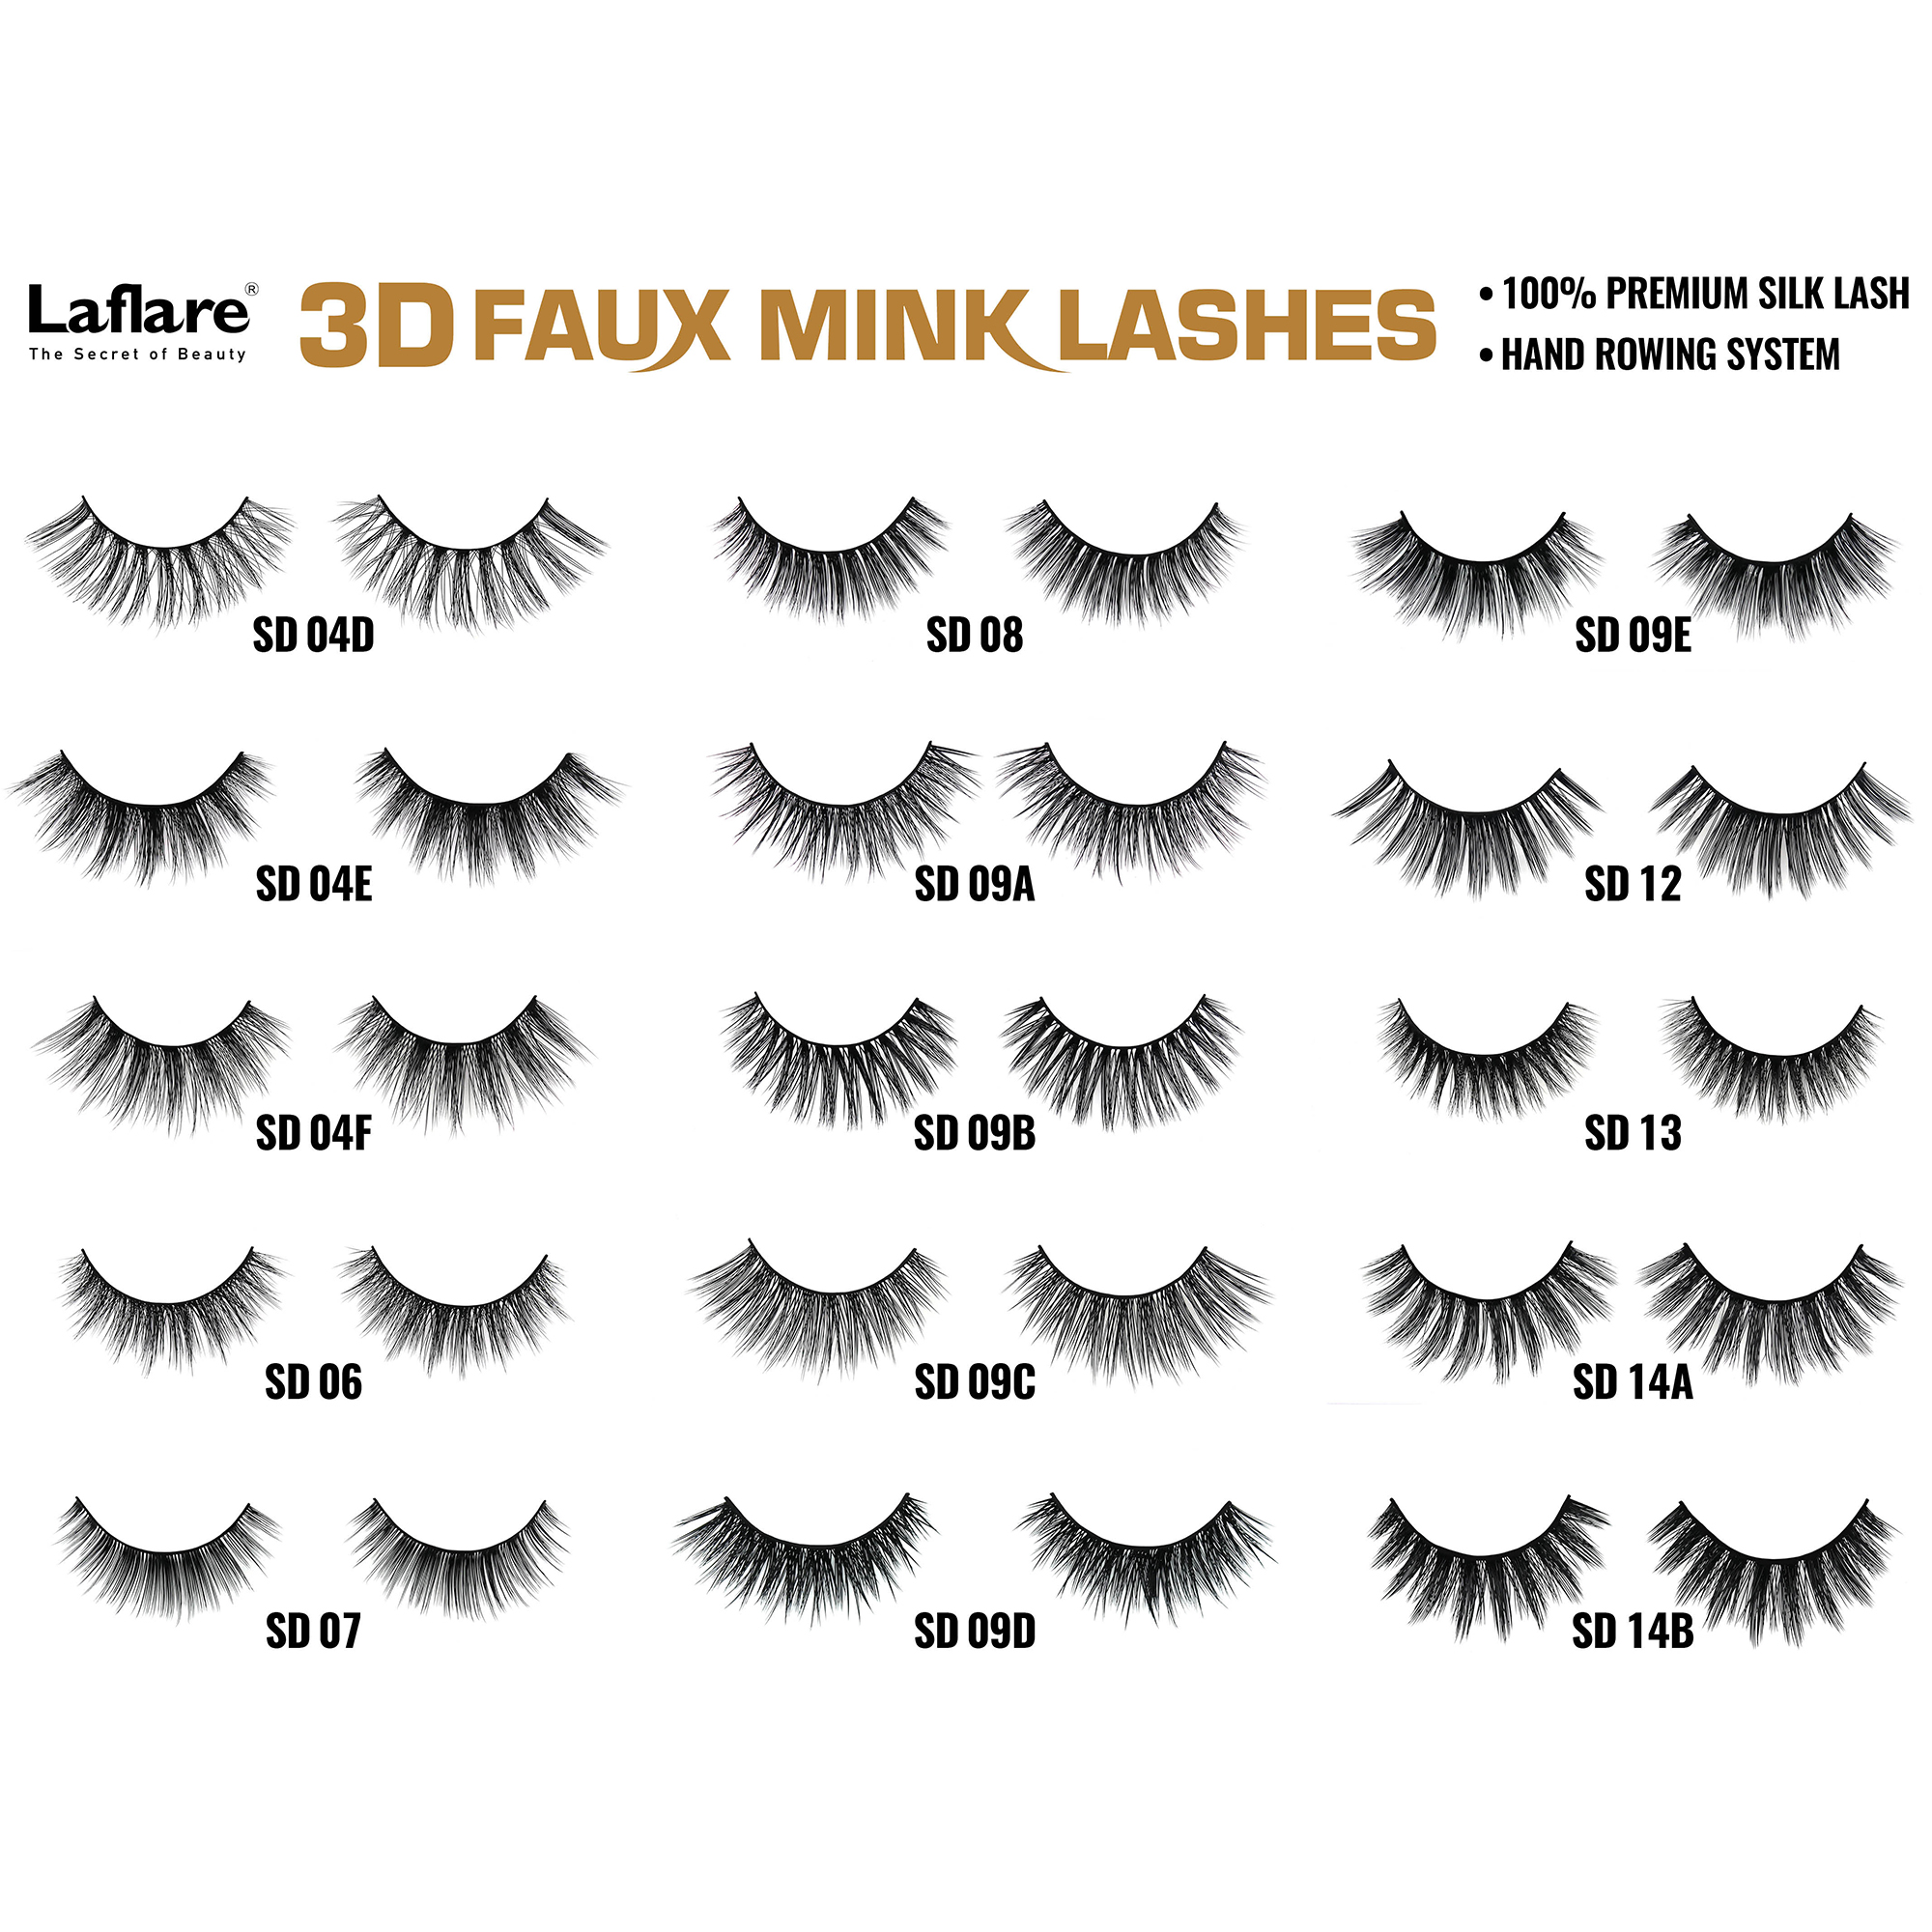 LAFLARE 3d Faux Mink Lashes - SD14C